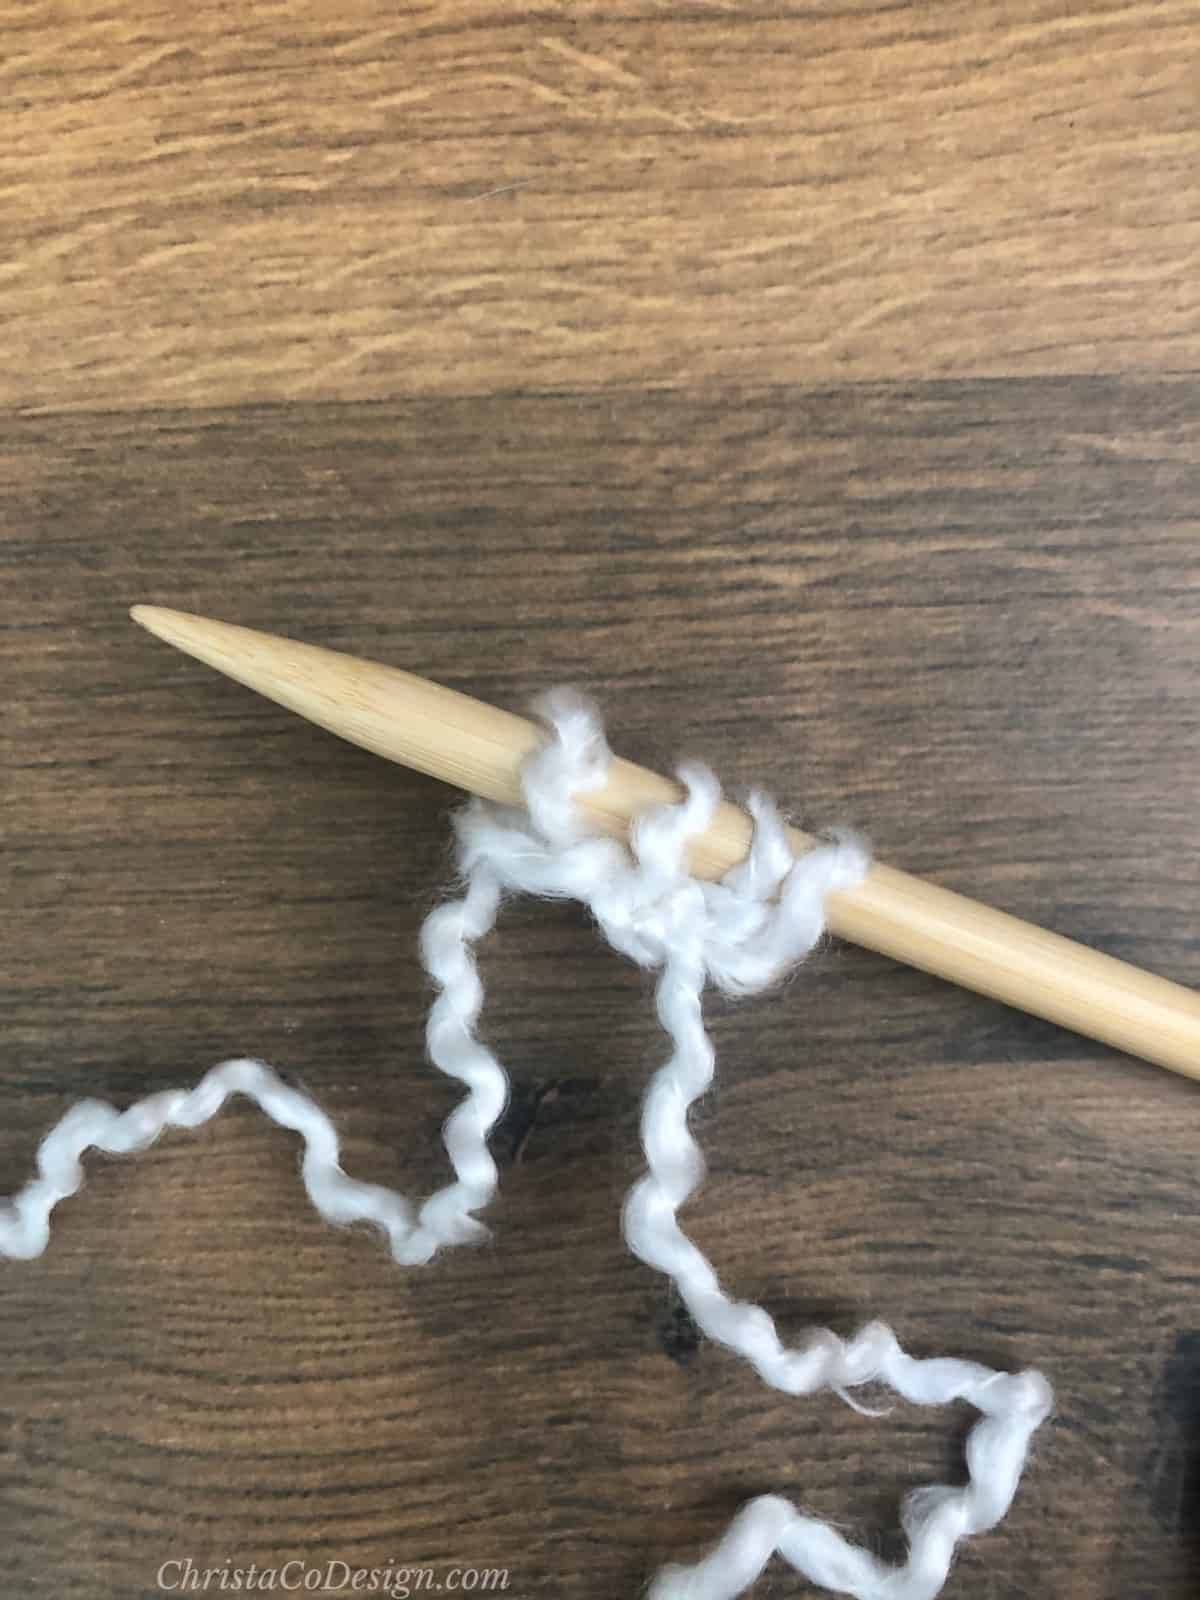 4 white stitches on knitting needle.